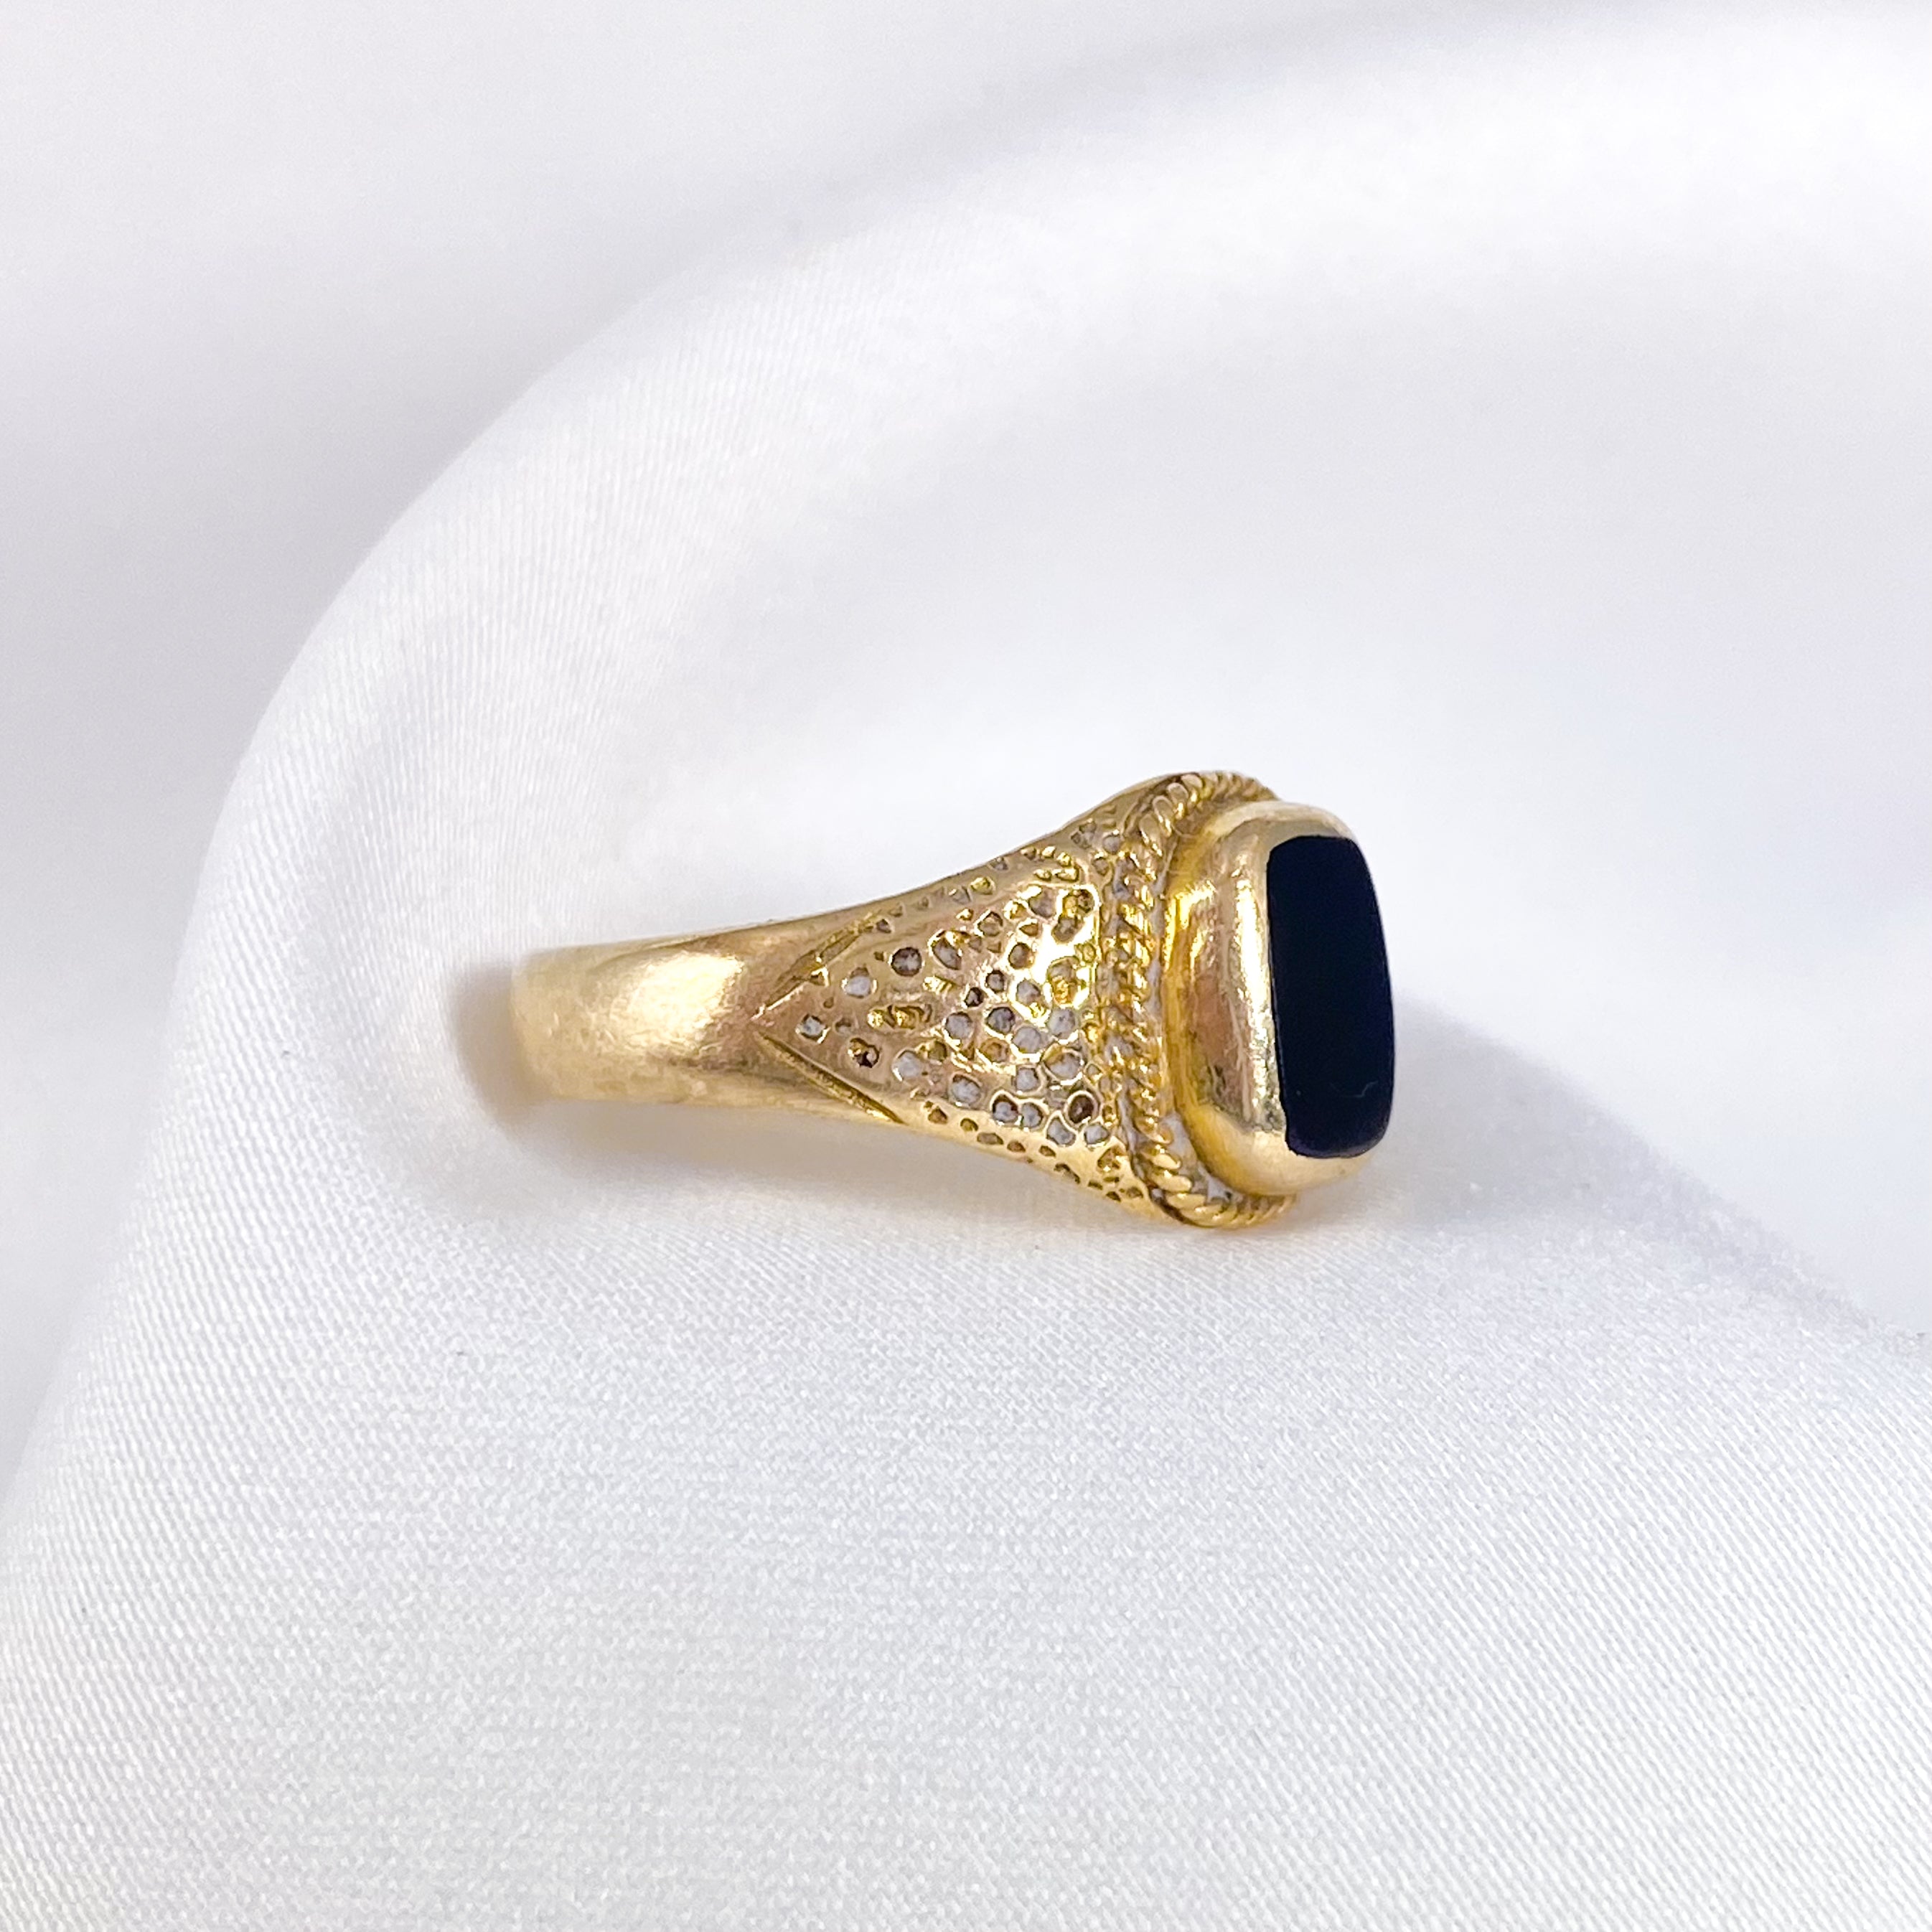 Unique Vintage Onyx ring